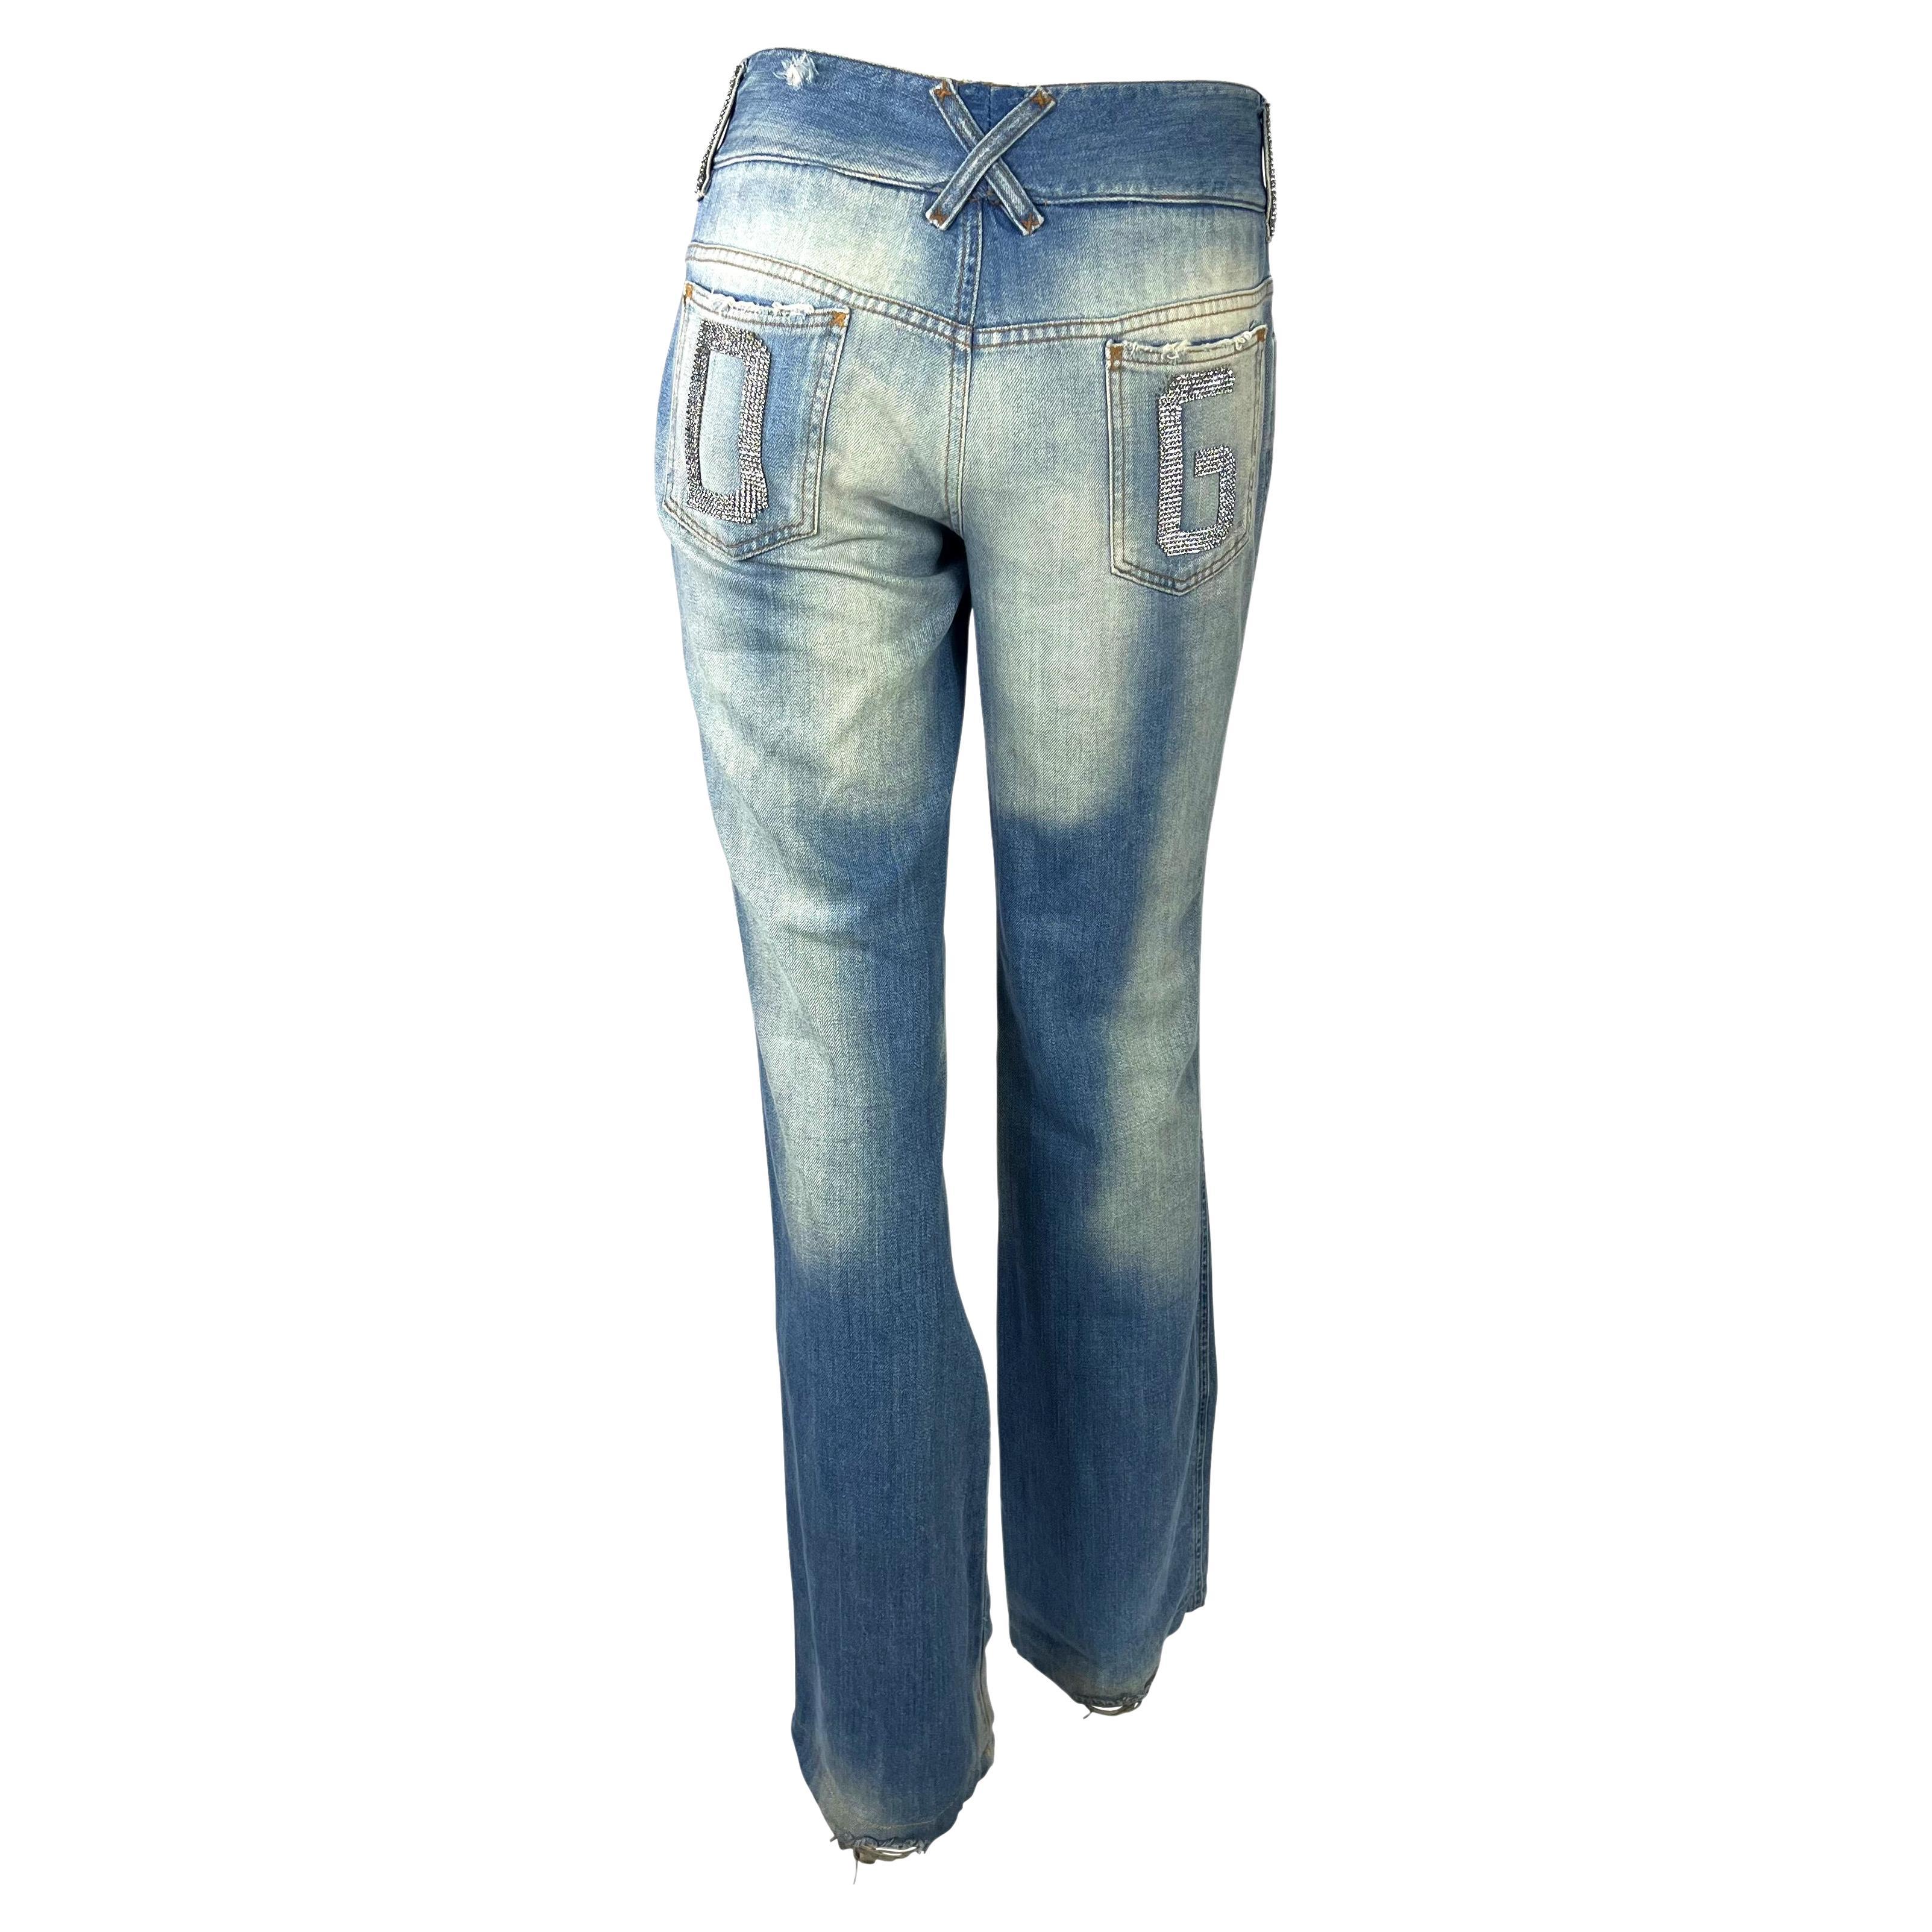 2003 dolce gabbana jeans